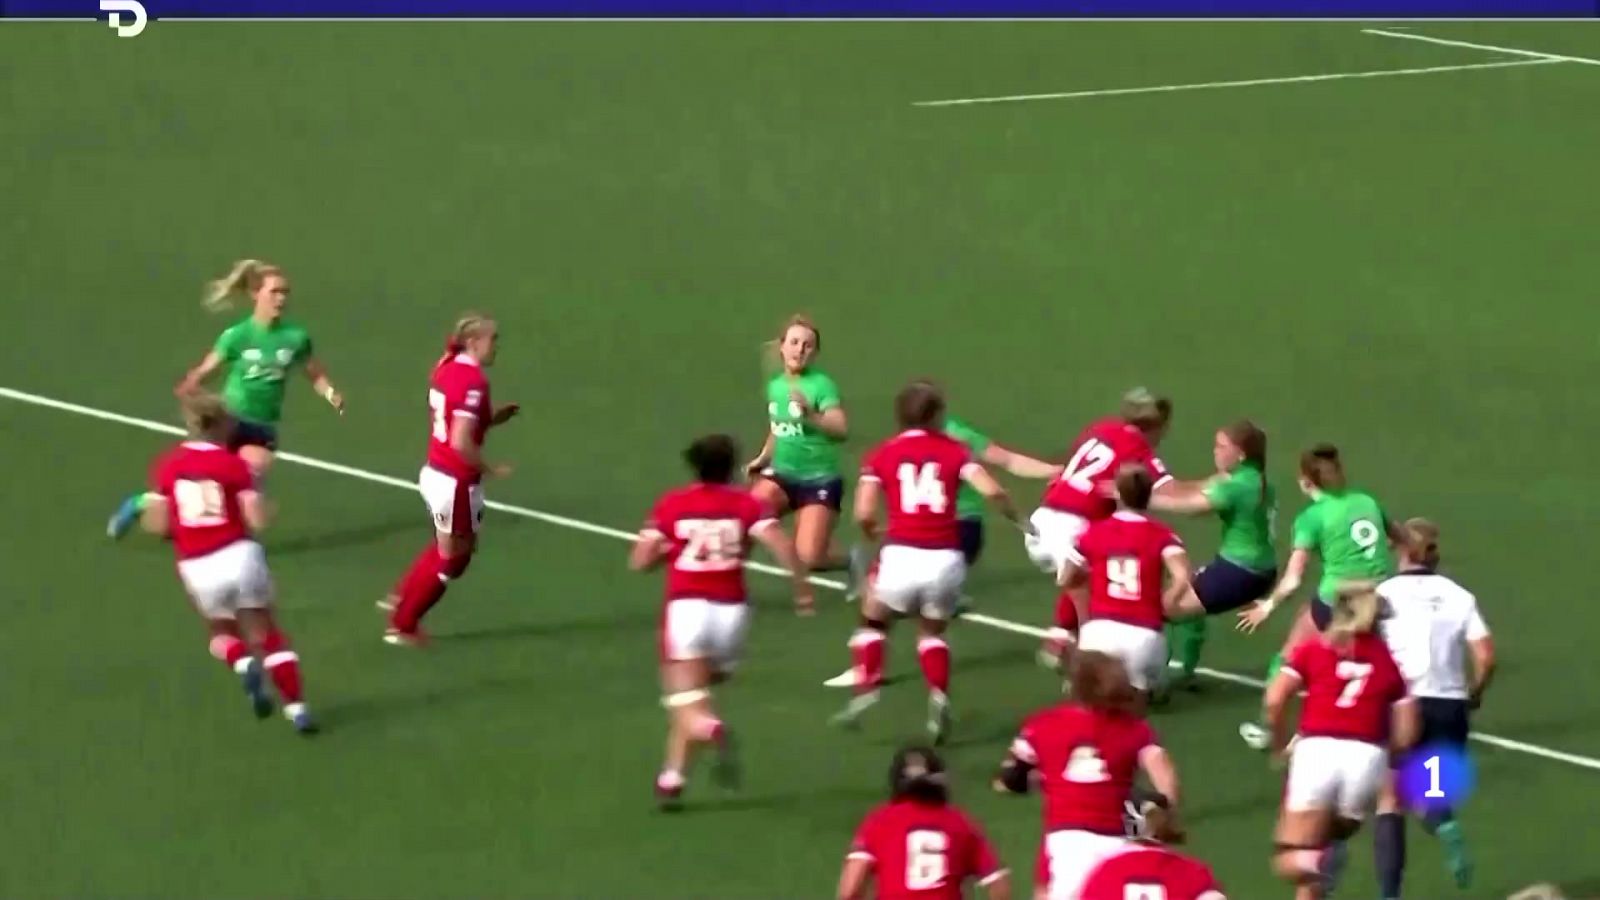 Nueva app que monitoriza el cilco menstrual de las jugadoras de rugby